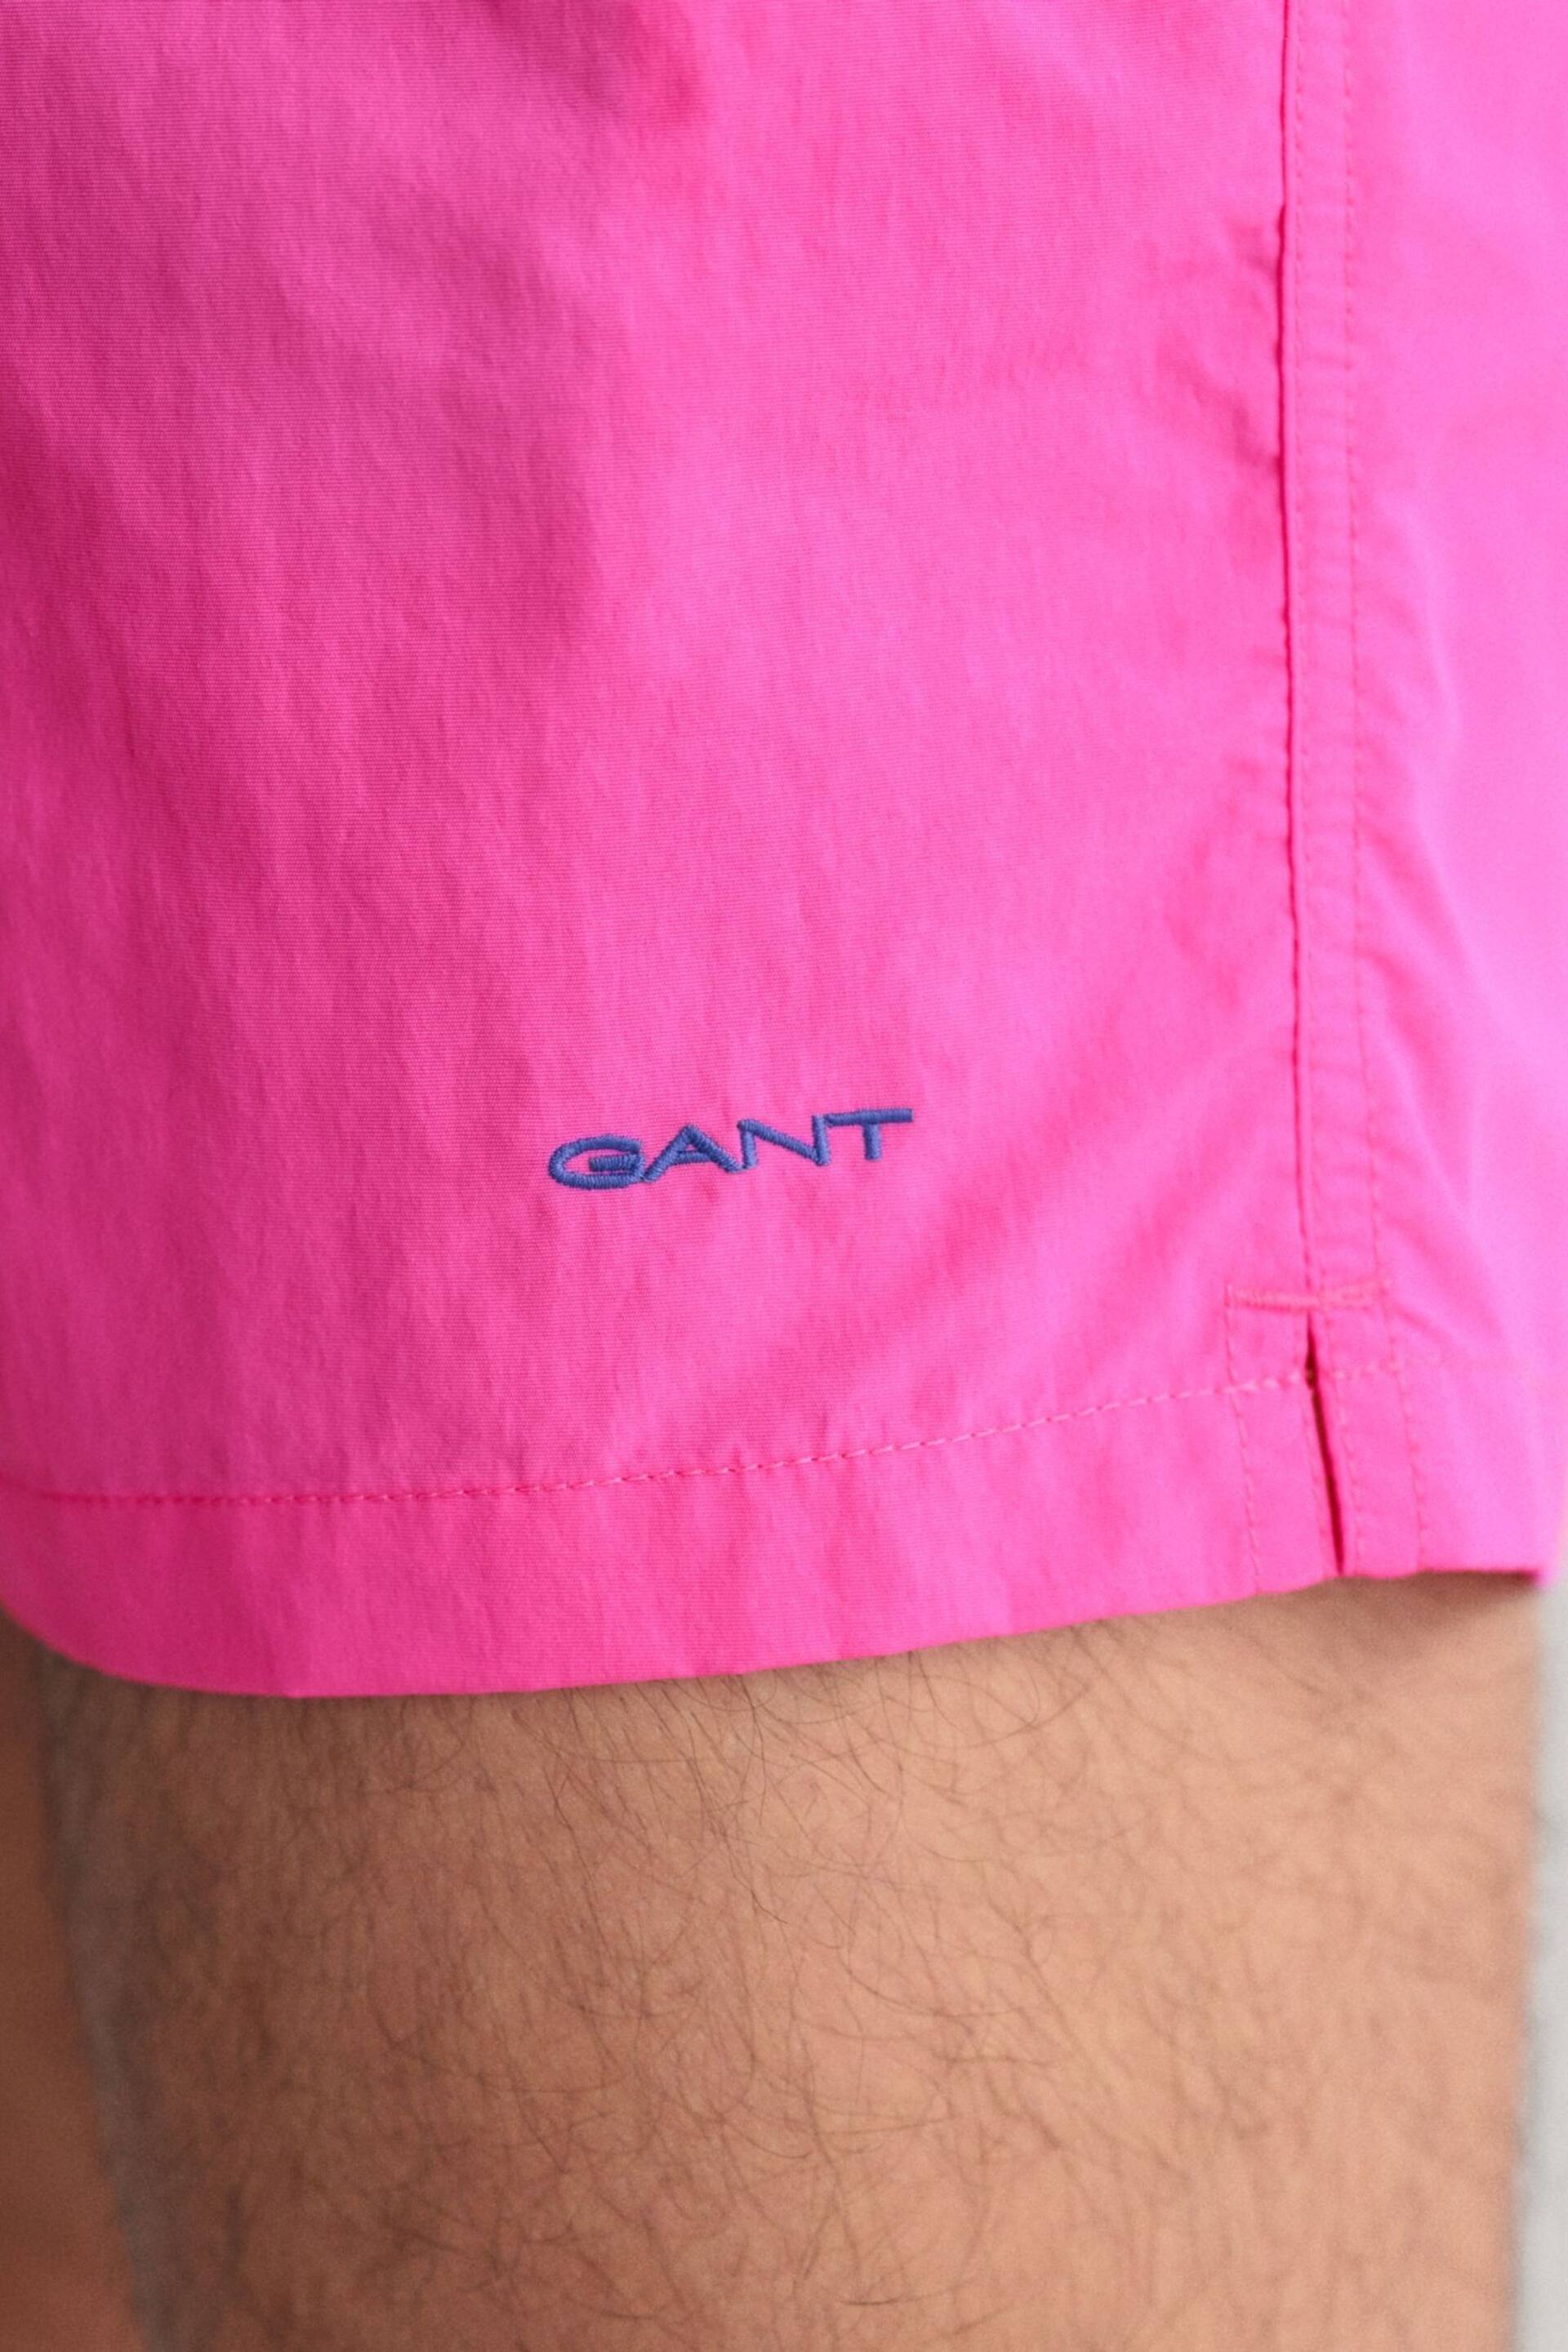 GANT Swim Shorts - Image 4 of 6